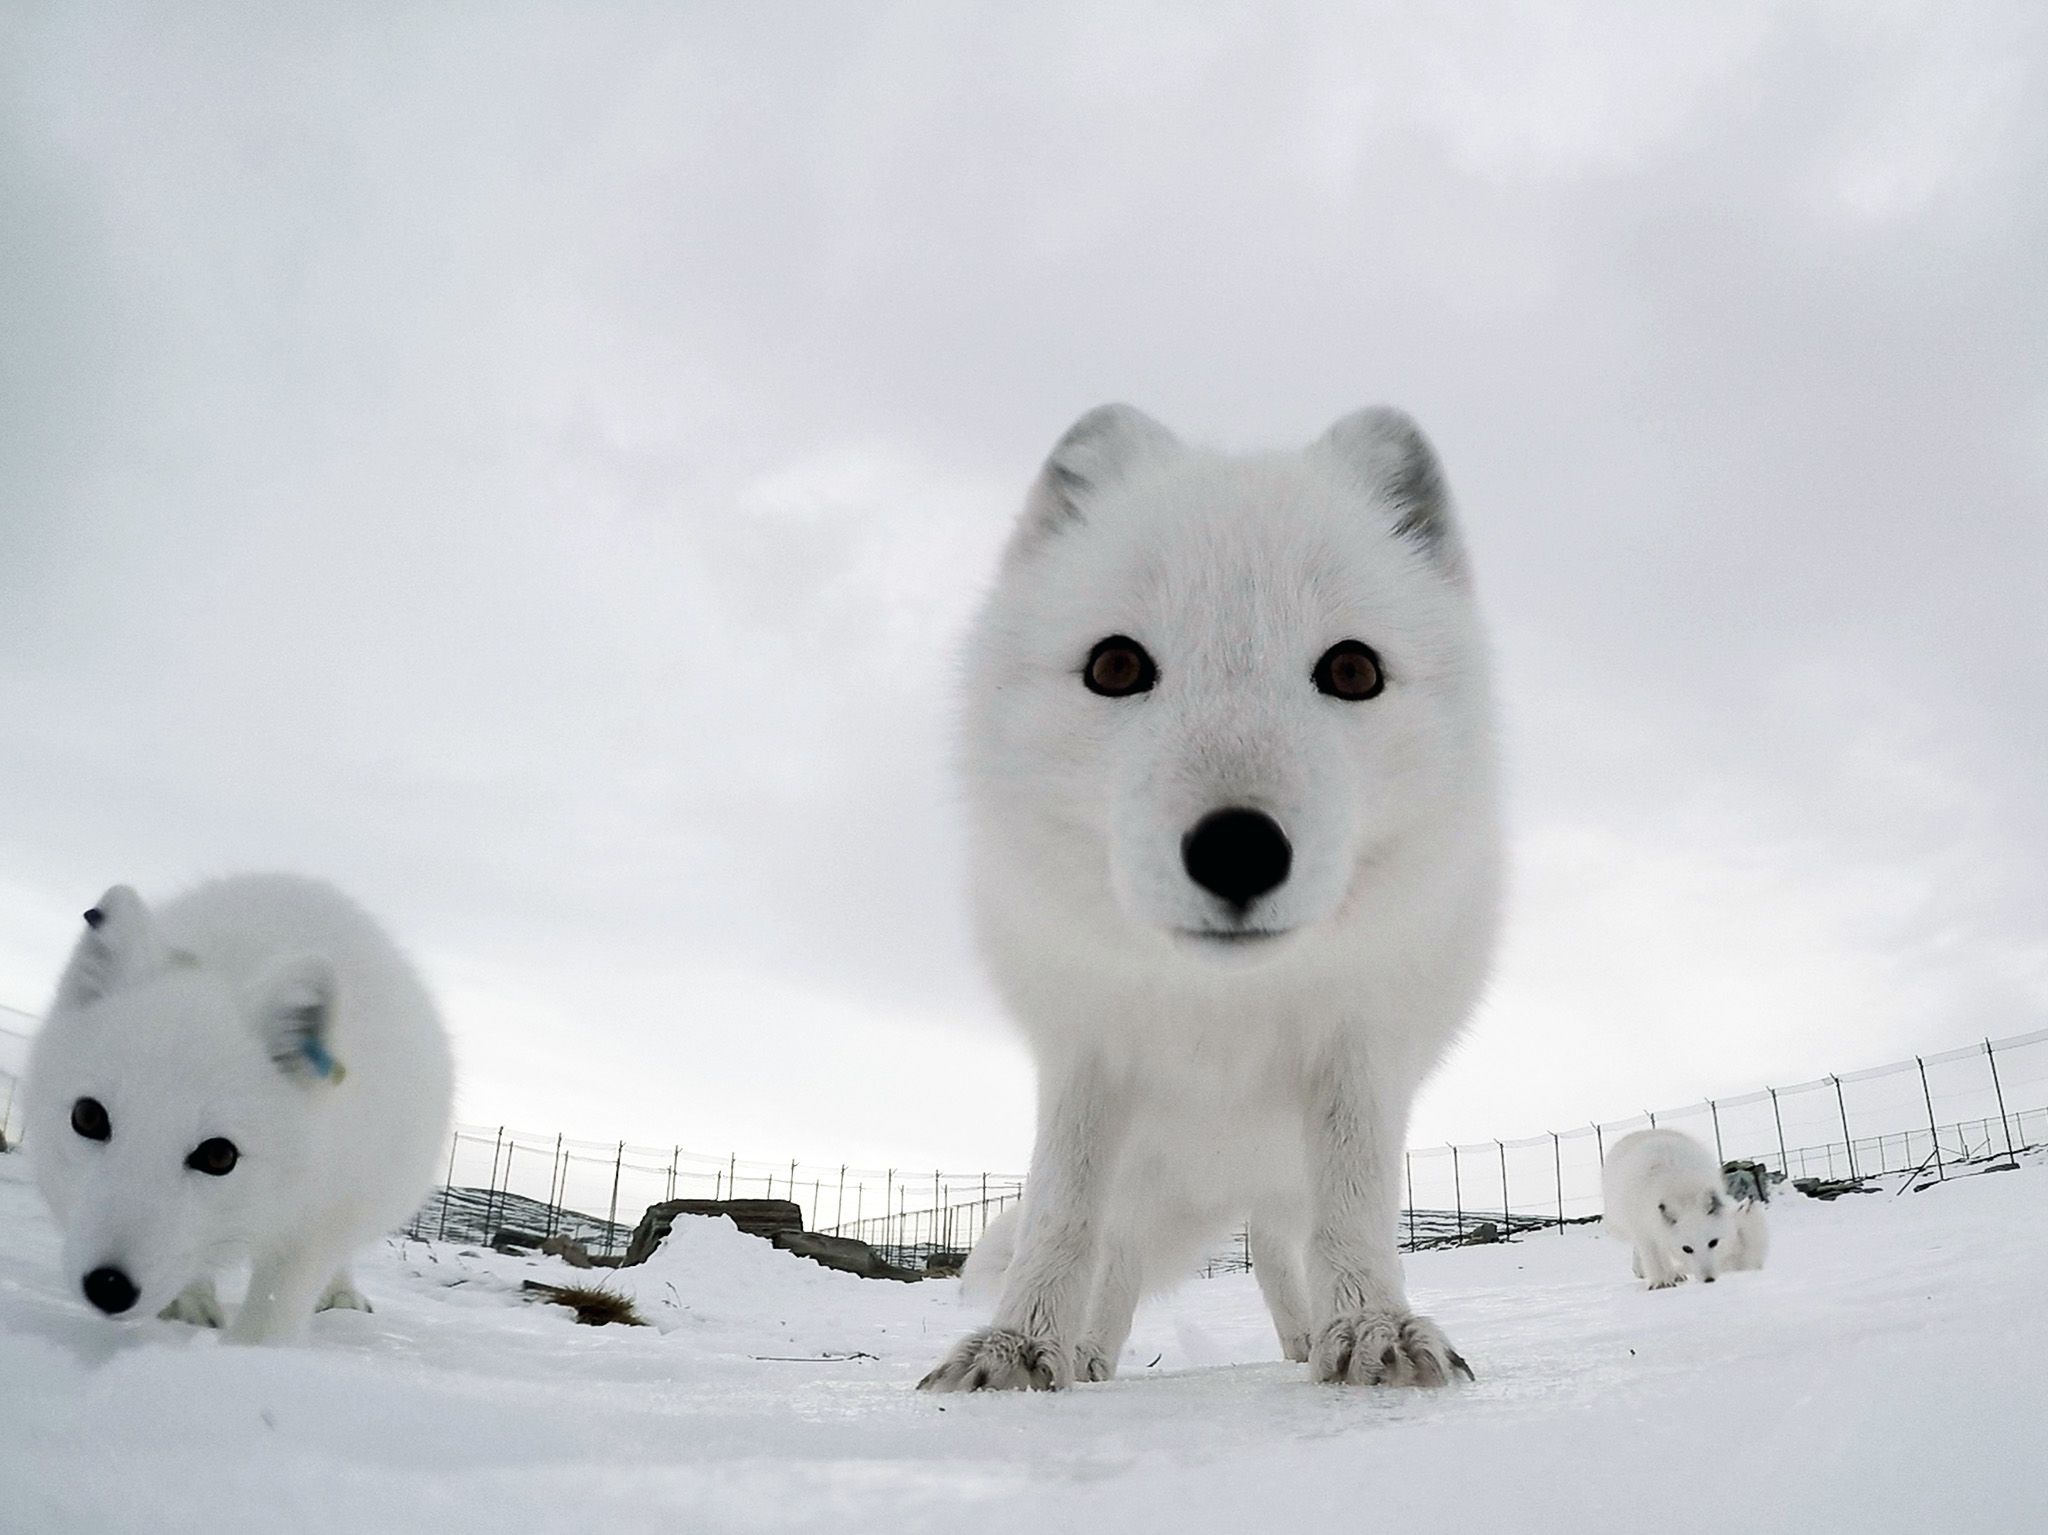 تلتقط عدسة كاميرا GoPro صورة لثعلب قطبي وهو ينظر مباشرة... [Photo of the day - يوليو 2020]